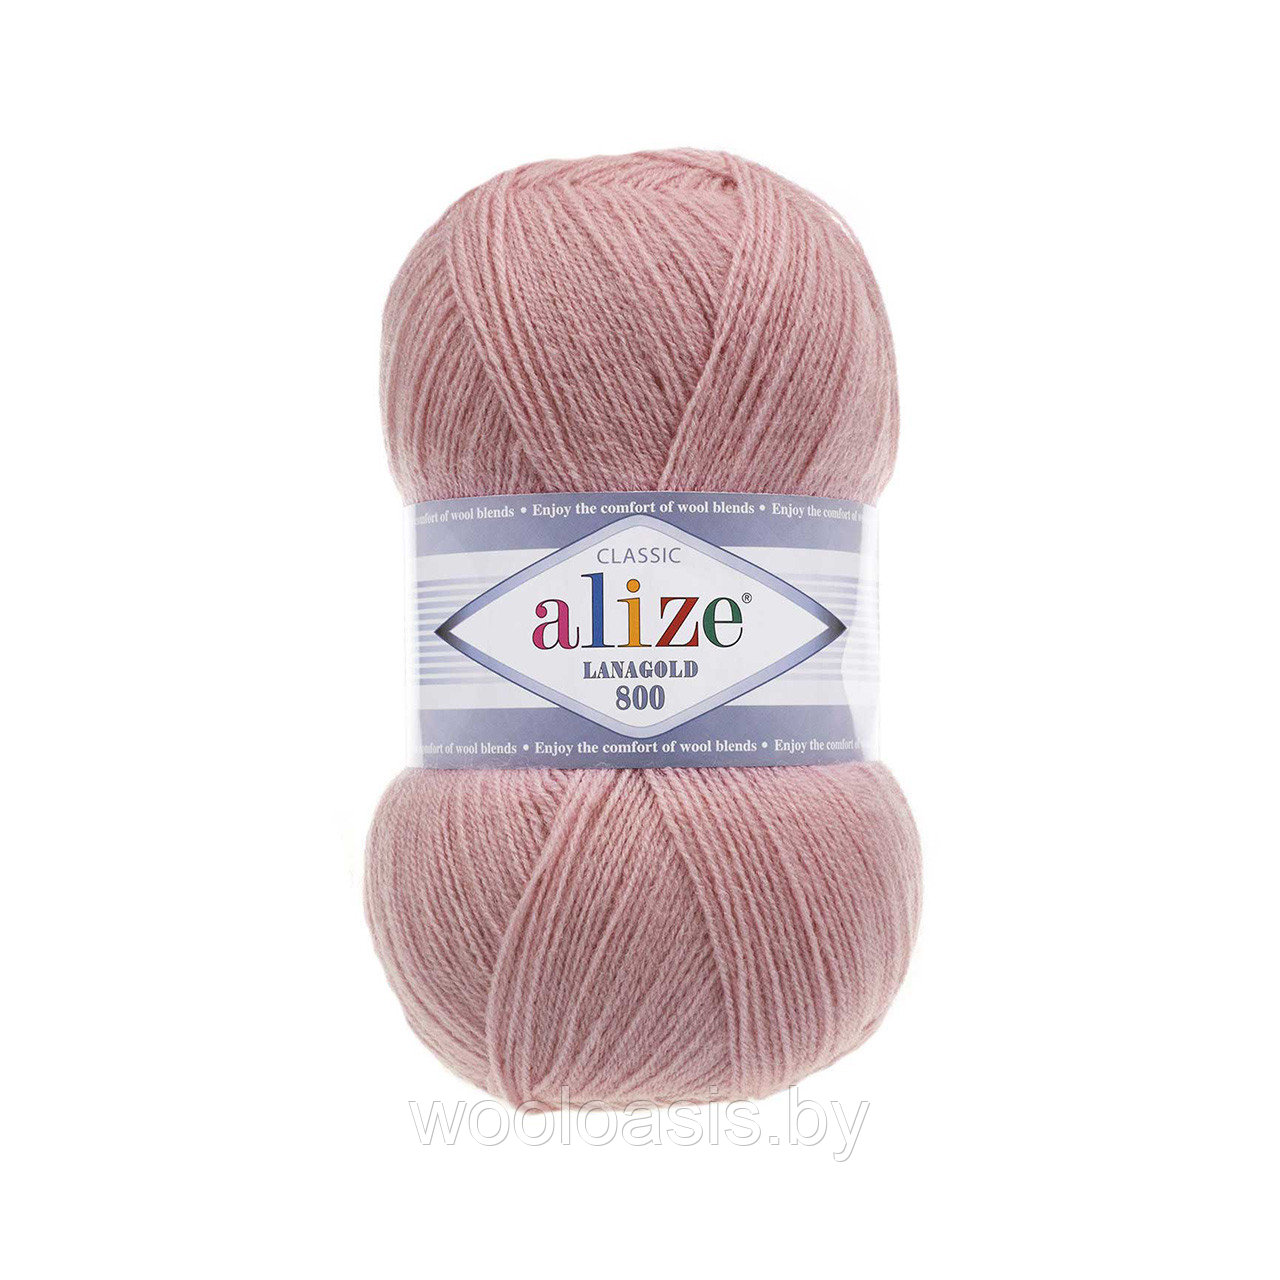 Пряжа Alize Lanagold 800, Ализе Ланаголд 800, турецкая, шерсть с акрилом, для ручного вязания (цвет 173)